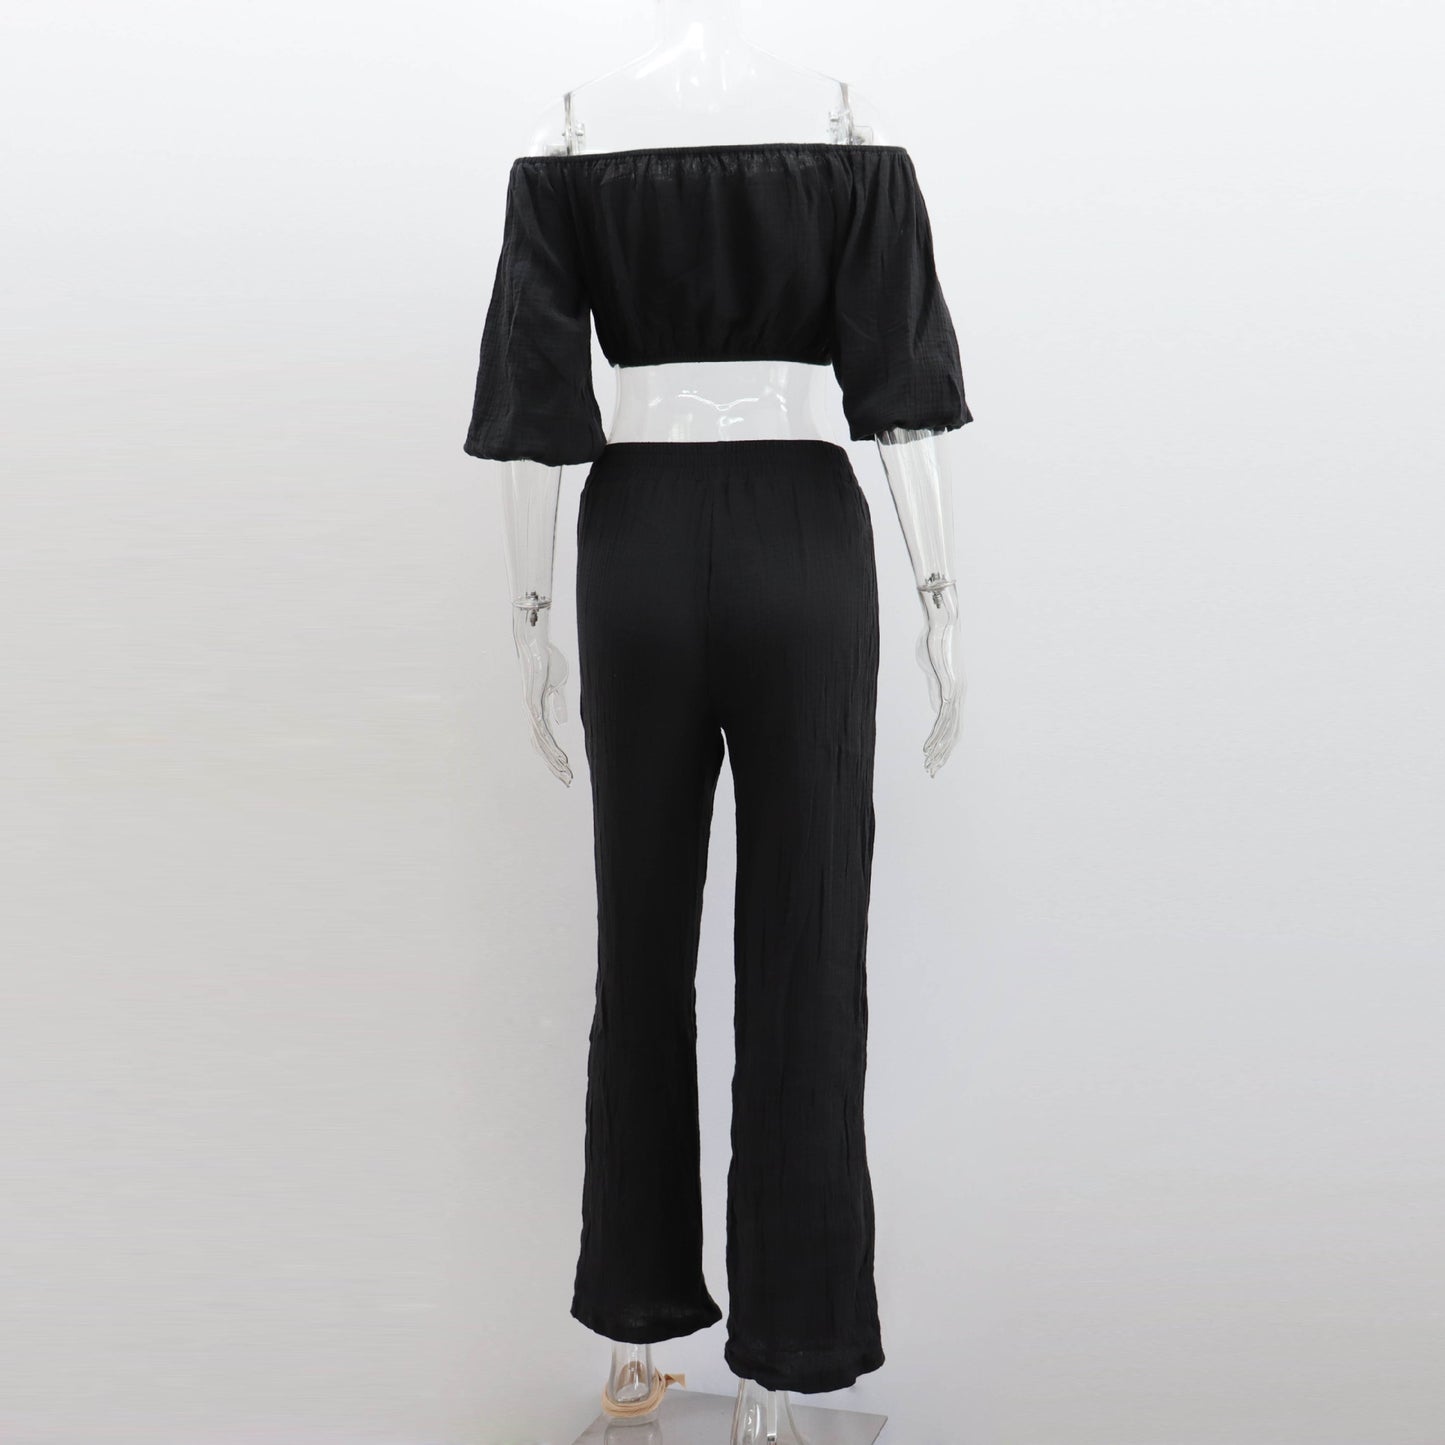 Pants set- Women's Cotton Vacation Outfit Set - Crop Top & Pants- - Chuzko Women Clothing